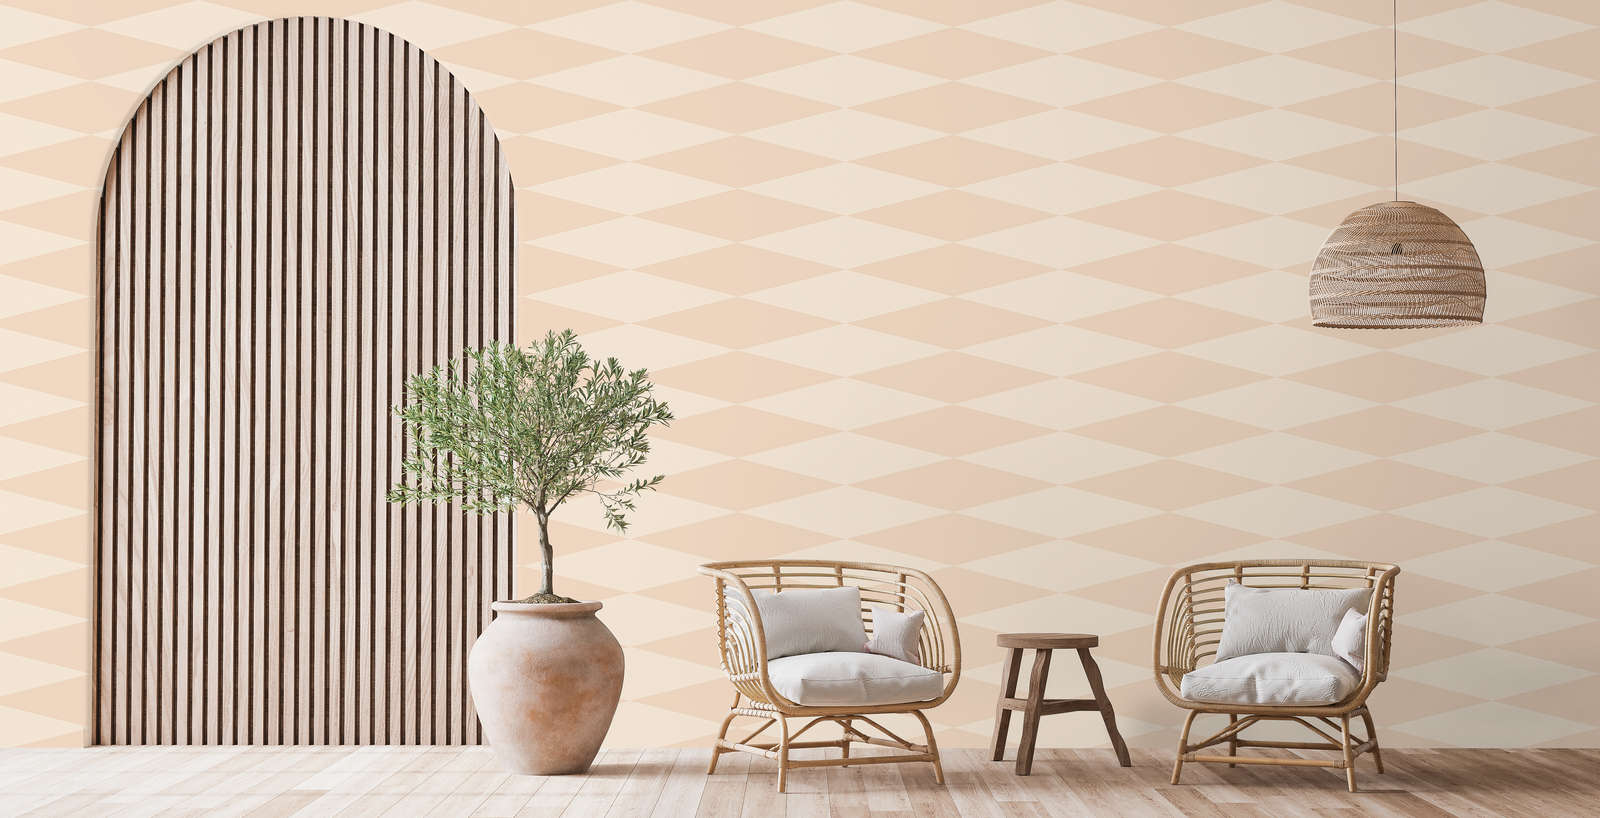             Photo wallpaper with retro diamond design - beige, cream | structure non-woven
        